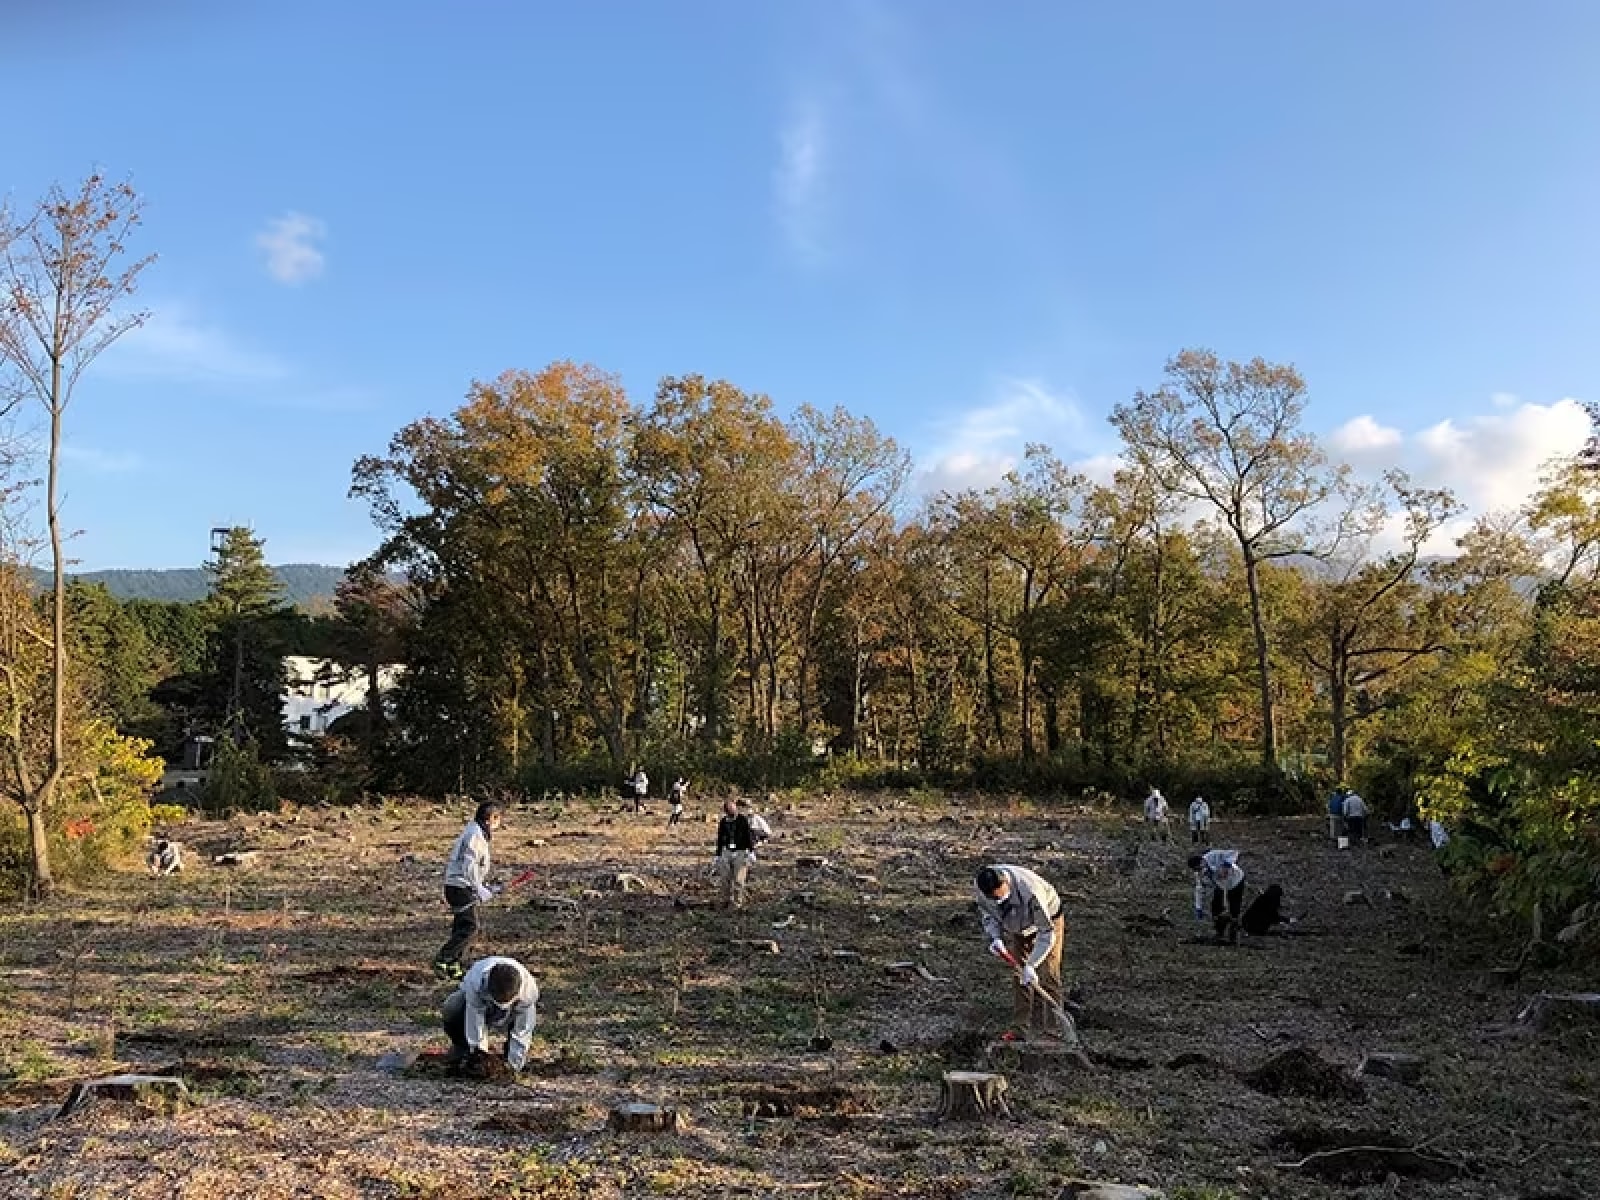 (Work) = Employee volunteers working hard at planting trees